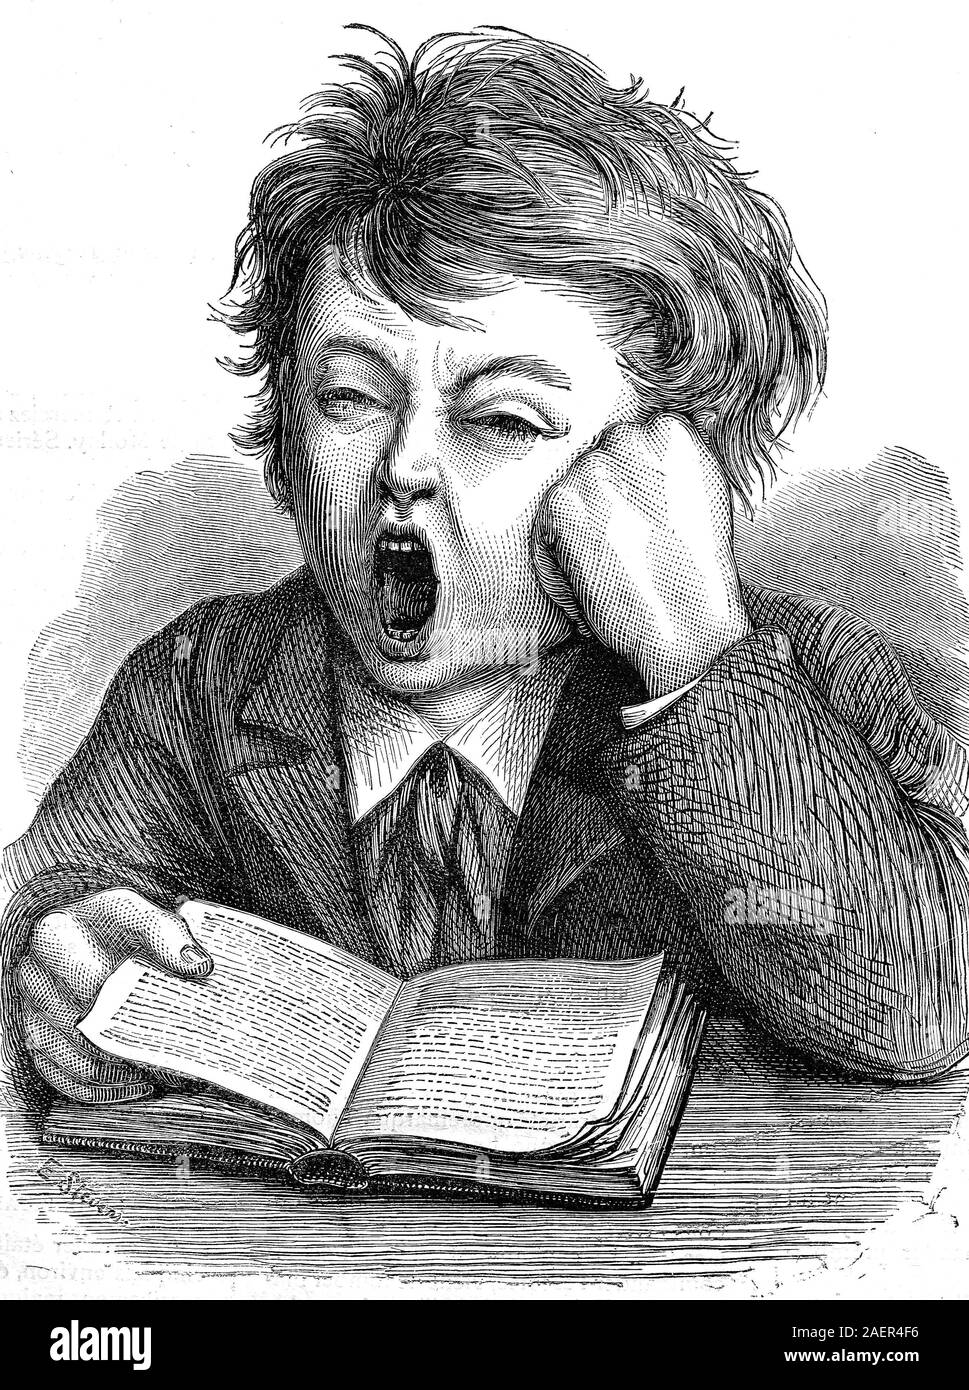 Boy yawns while reading  /  Junge gähnt bei Lesen, Reproduction of an original 19th century print / Reproduktion von einem Originaldruck aus dem 19. Jahrhundert Stock Photo